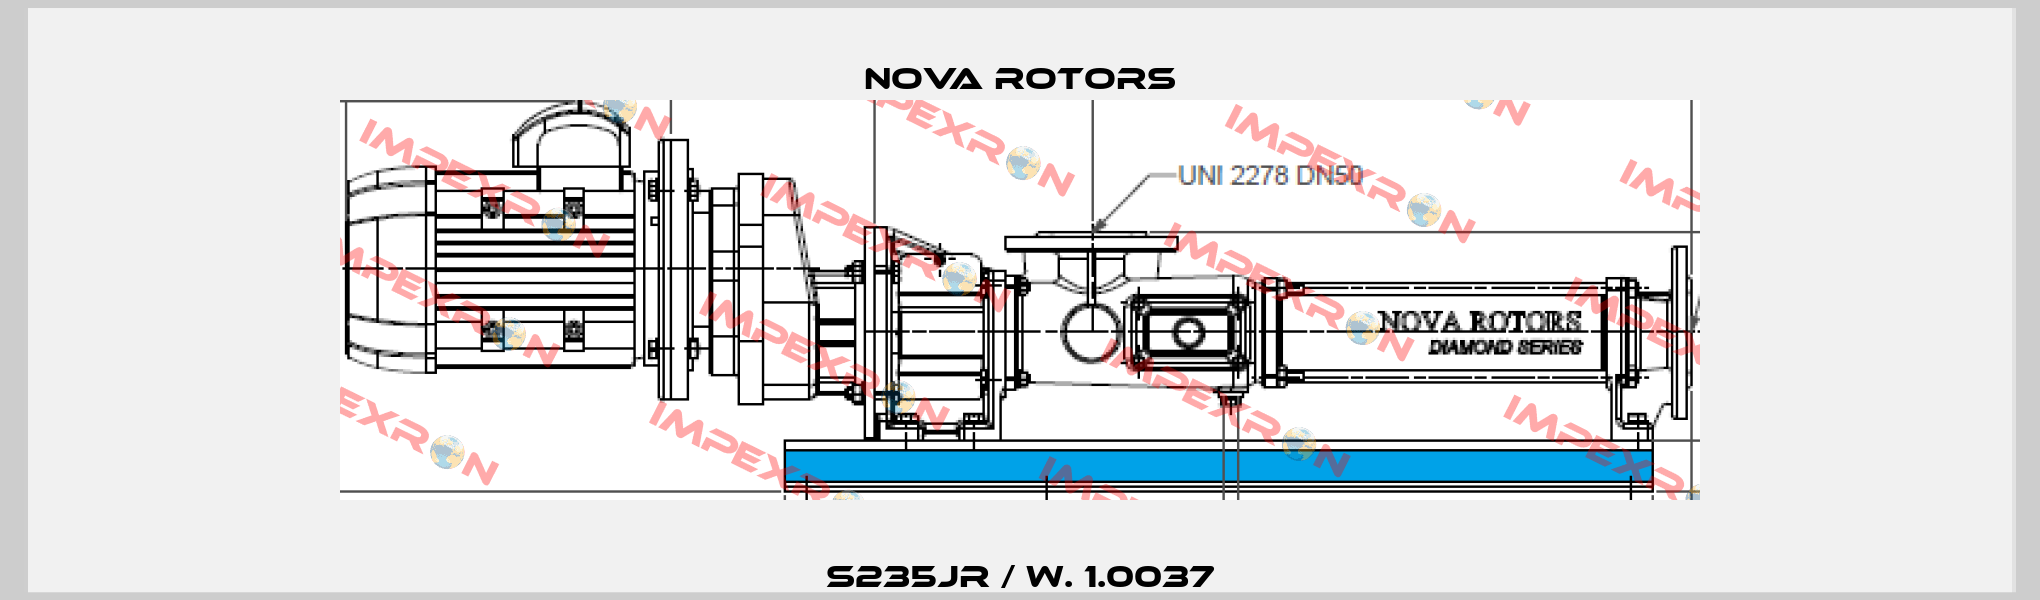 S235JR / W. 1.0037 Nova Rotors